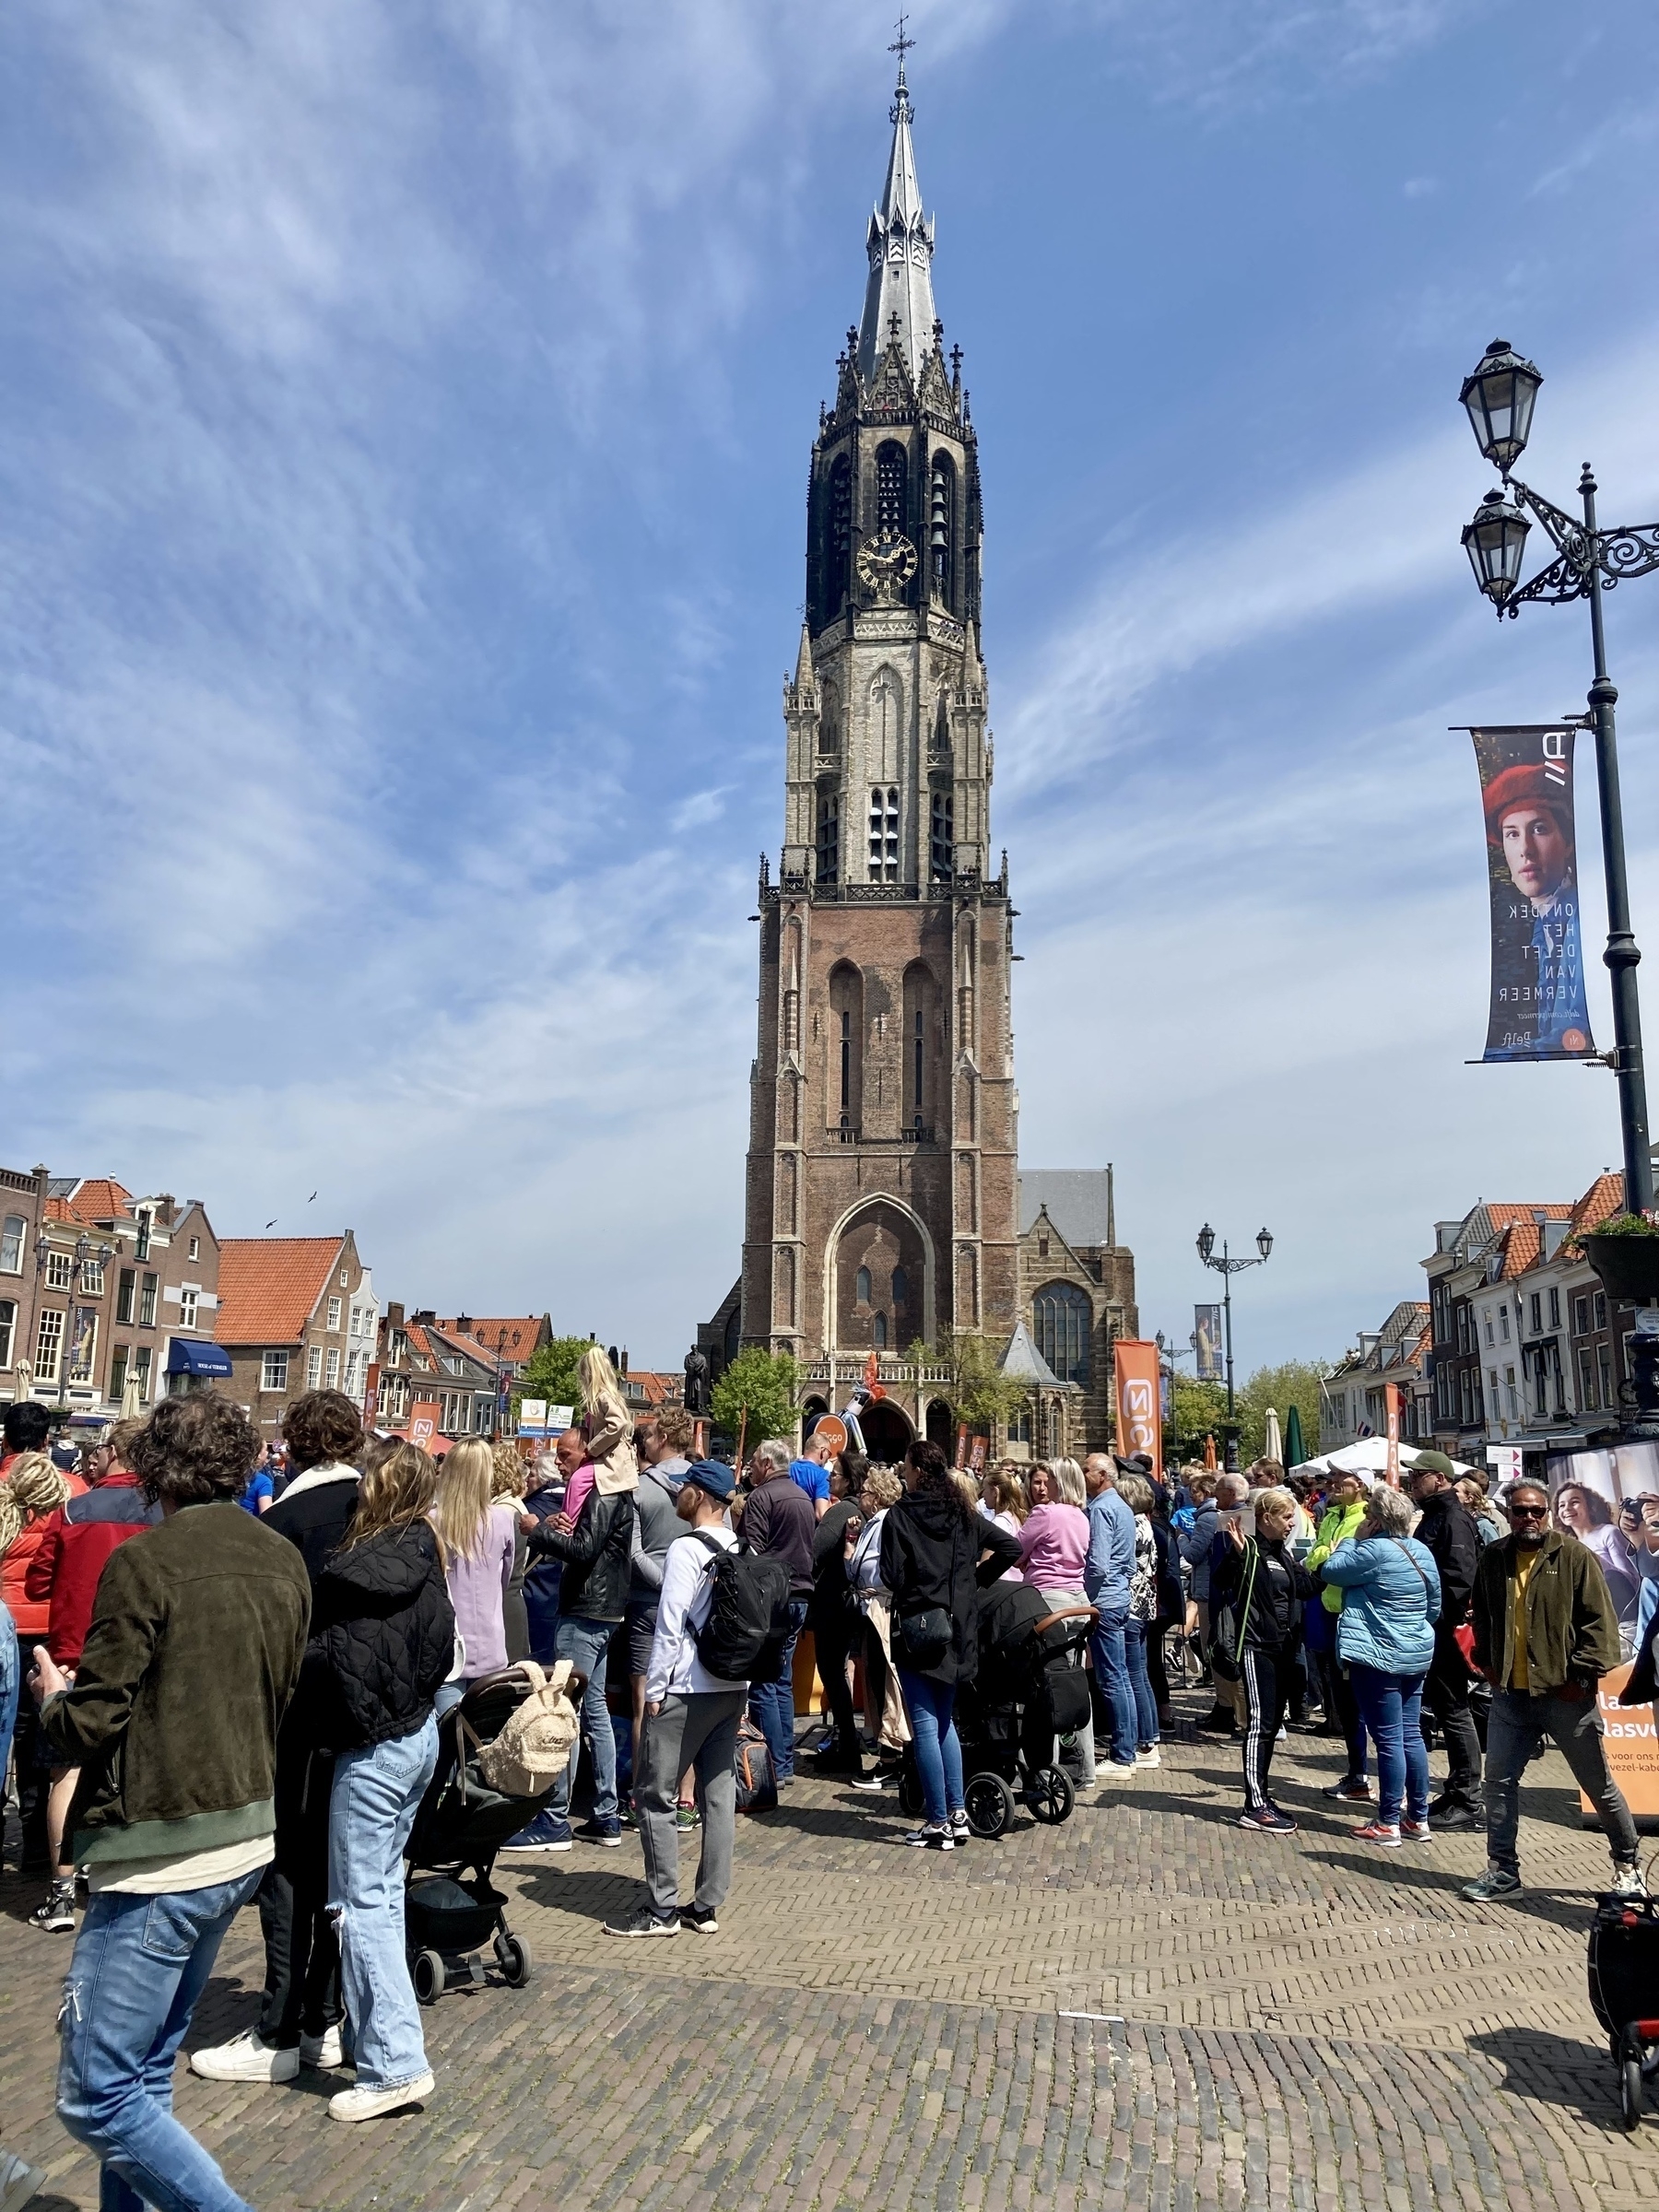 marktplein in Delft vol met mensen, met op de achtergrond de toren van de Nieuwe Kerk